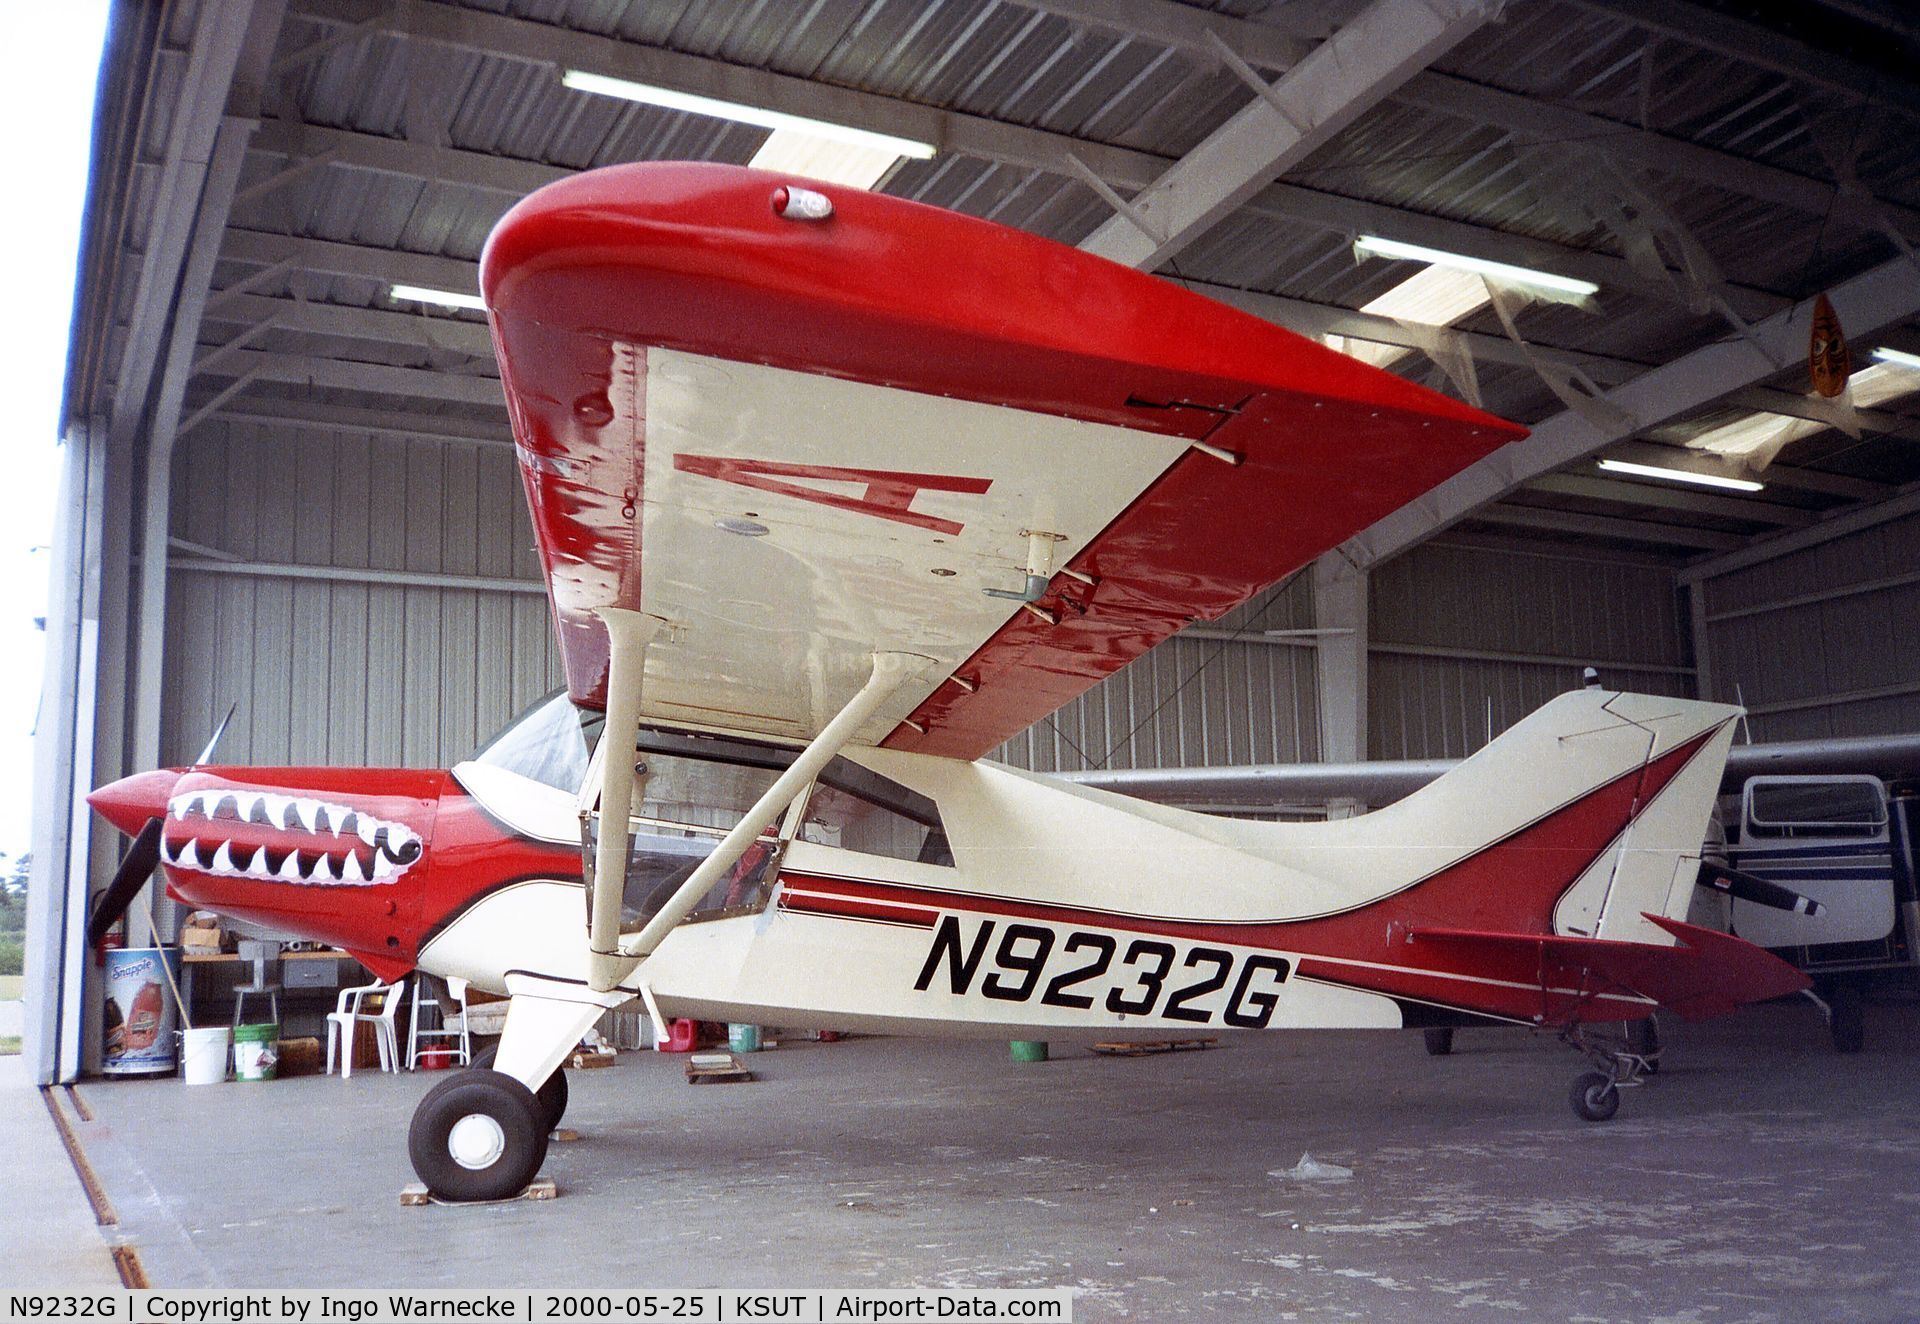 N9232G, 1992 Maule MX-7-160 Sportplane C/N 19001C, Maule MX-7-160 at Brunswick County airport, Oak Island NC